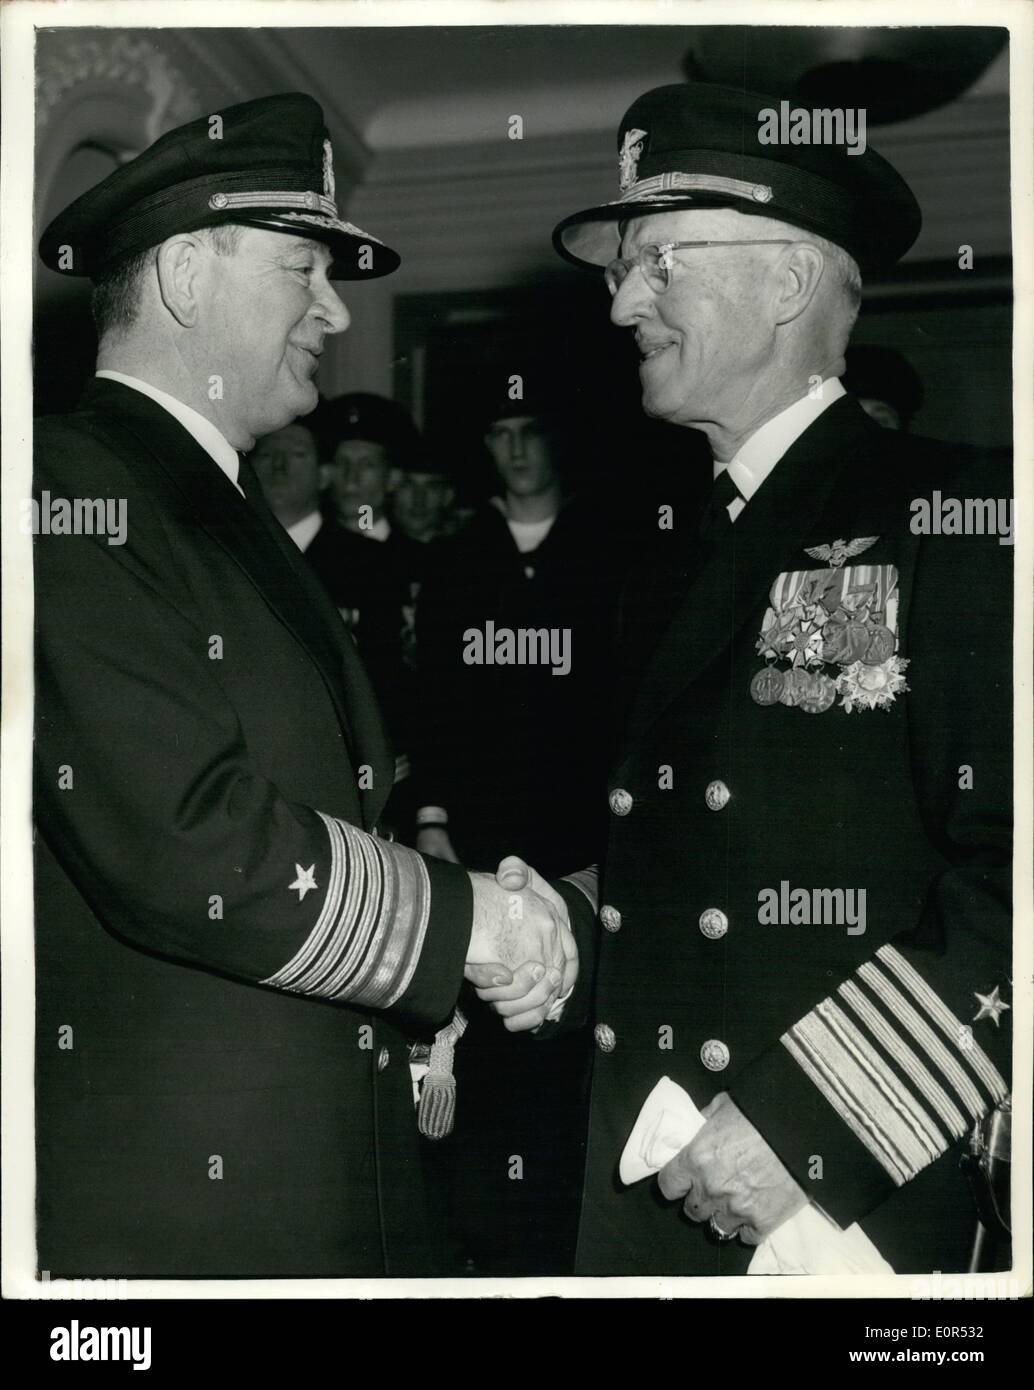 10 févr. 02, 1958 - L'amiral Holloway prend le dessus. : l'Amiral James L. Holloway Jnr. U.S.N., aujourd'hui soulagés l'amiral Walter F. Boone, USW, commandant en chef des Forces navales des États-Unis, l'Atlantique Est et Méditerranée. Une cérémonie a eu lieu à la U.S. Naval H.S., Grosvenor Square - ans a été suivi par l'amiral Comte Mountbatten. La photo montre l'amiral Holloway (à gauche), serre, serre la main avec l'amiral Boome - au cours de la cérémonie de ce matin. Banque D'Images